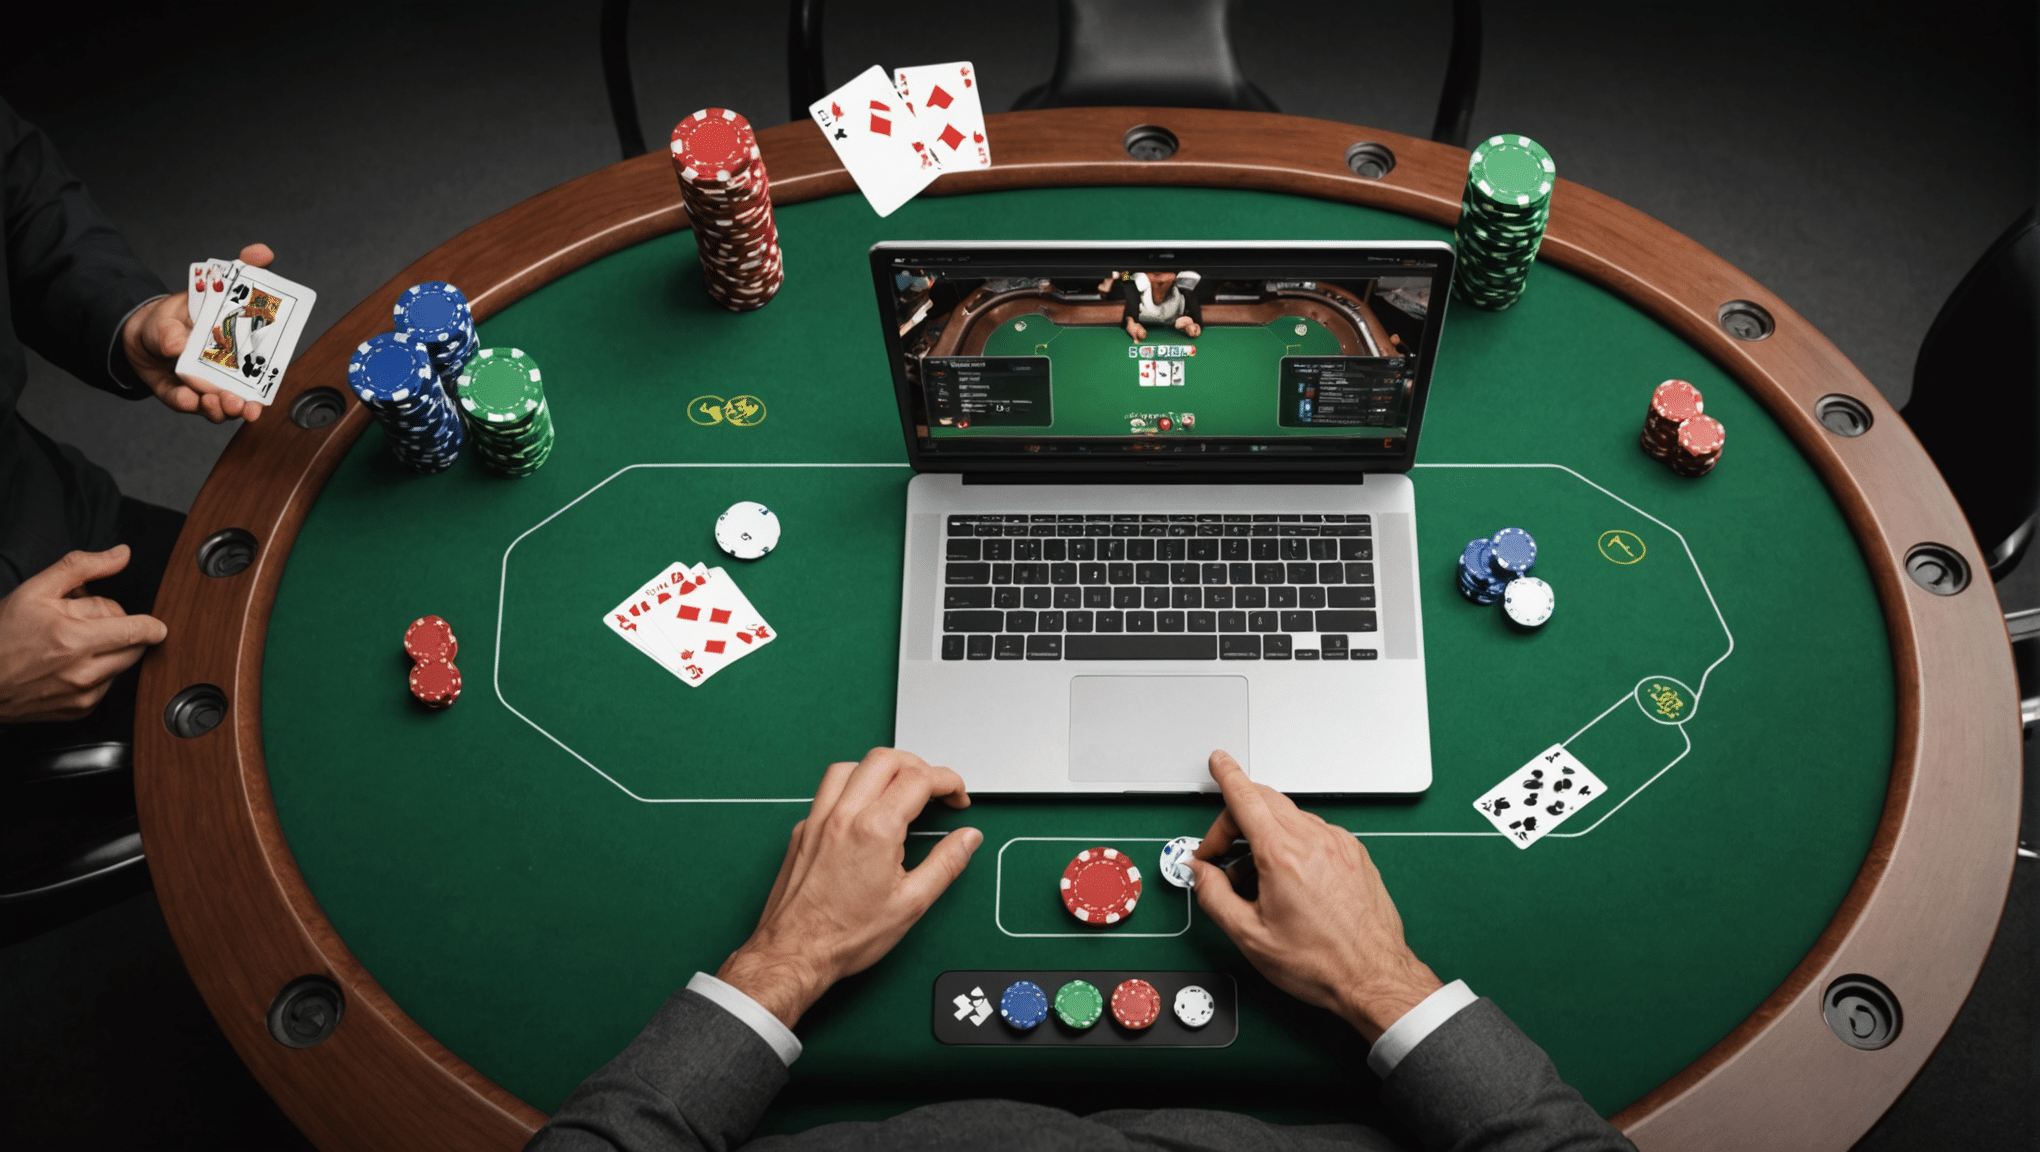 découvrez les règles du poker et améliorez vos compétences en utilisant des tutoriels en ligne pour apprendre les stratégies et les techniques de ce jeu de cartes passionnant.